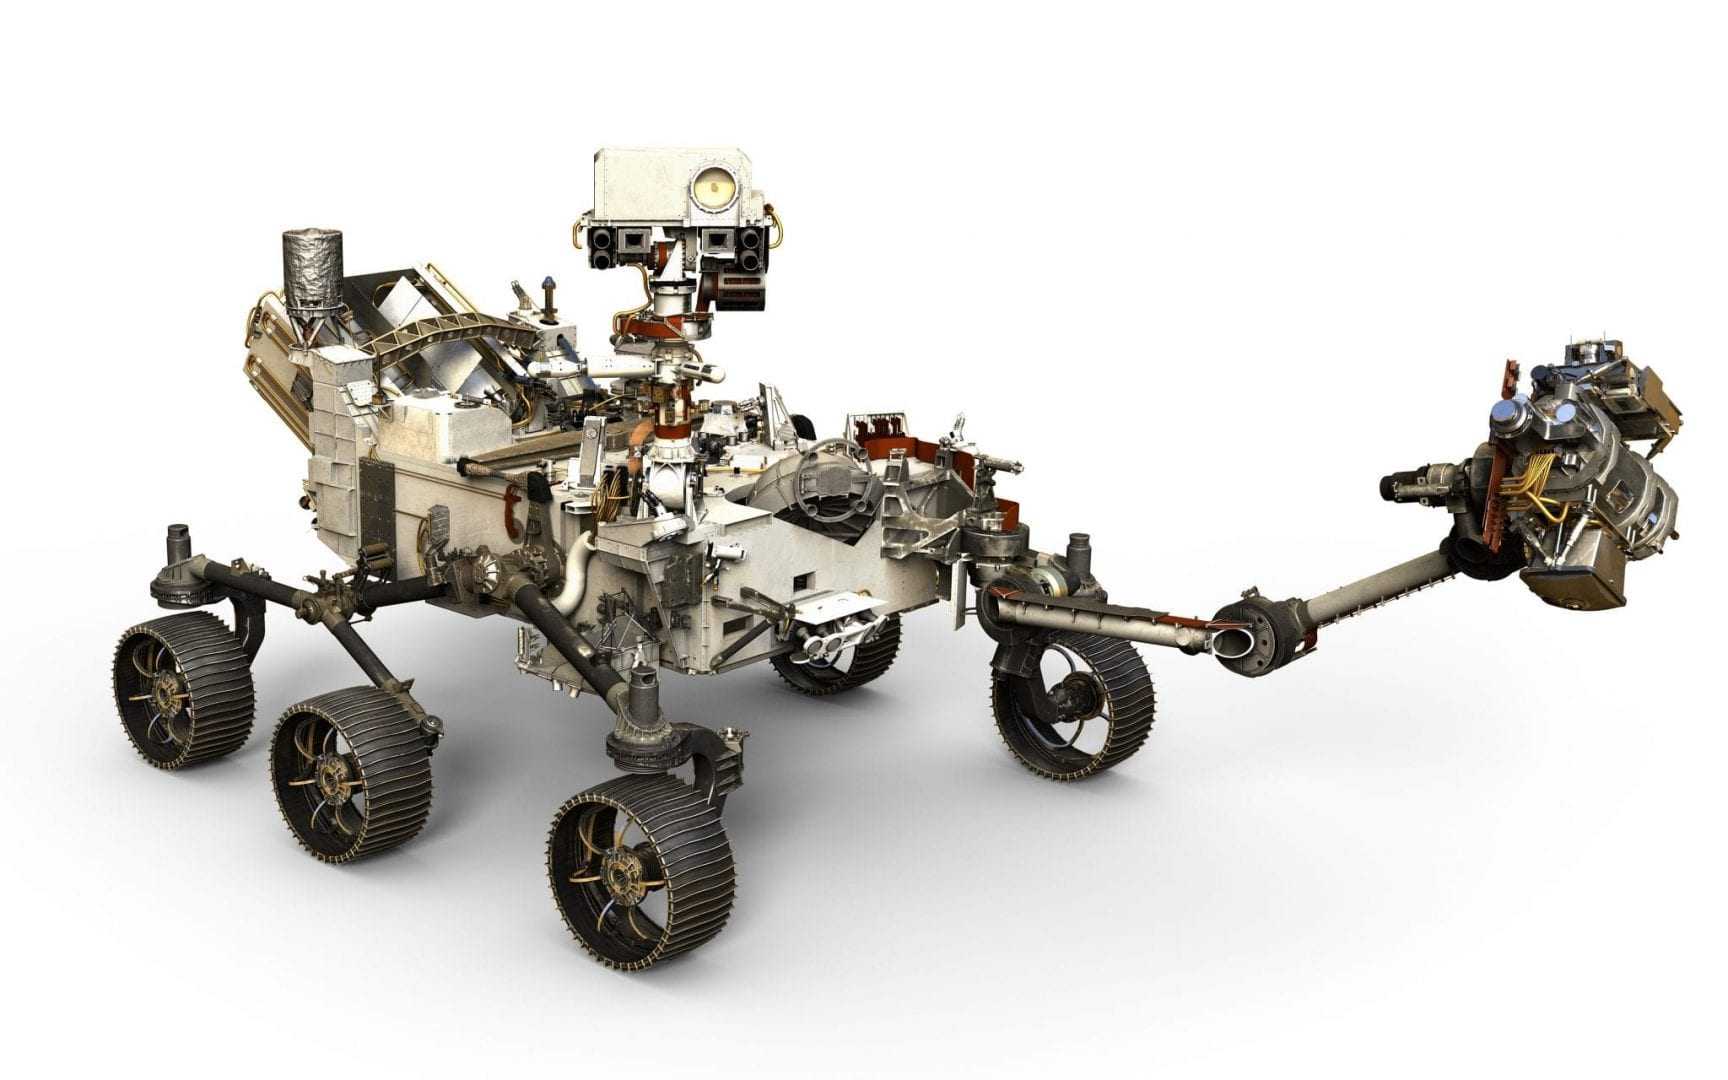 NASA Mars 2020 Rover